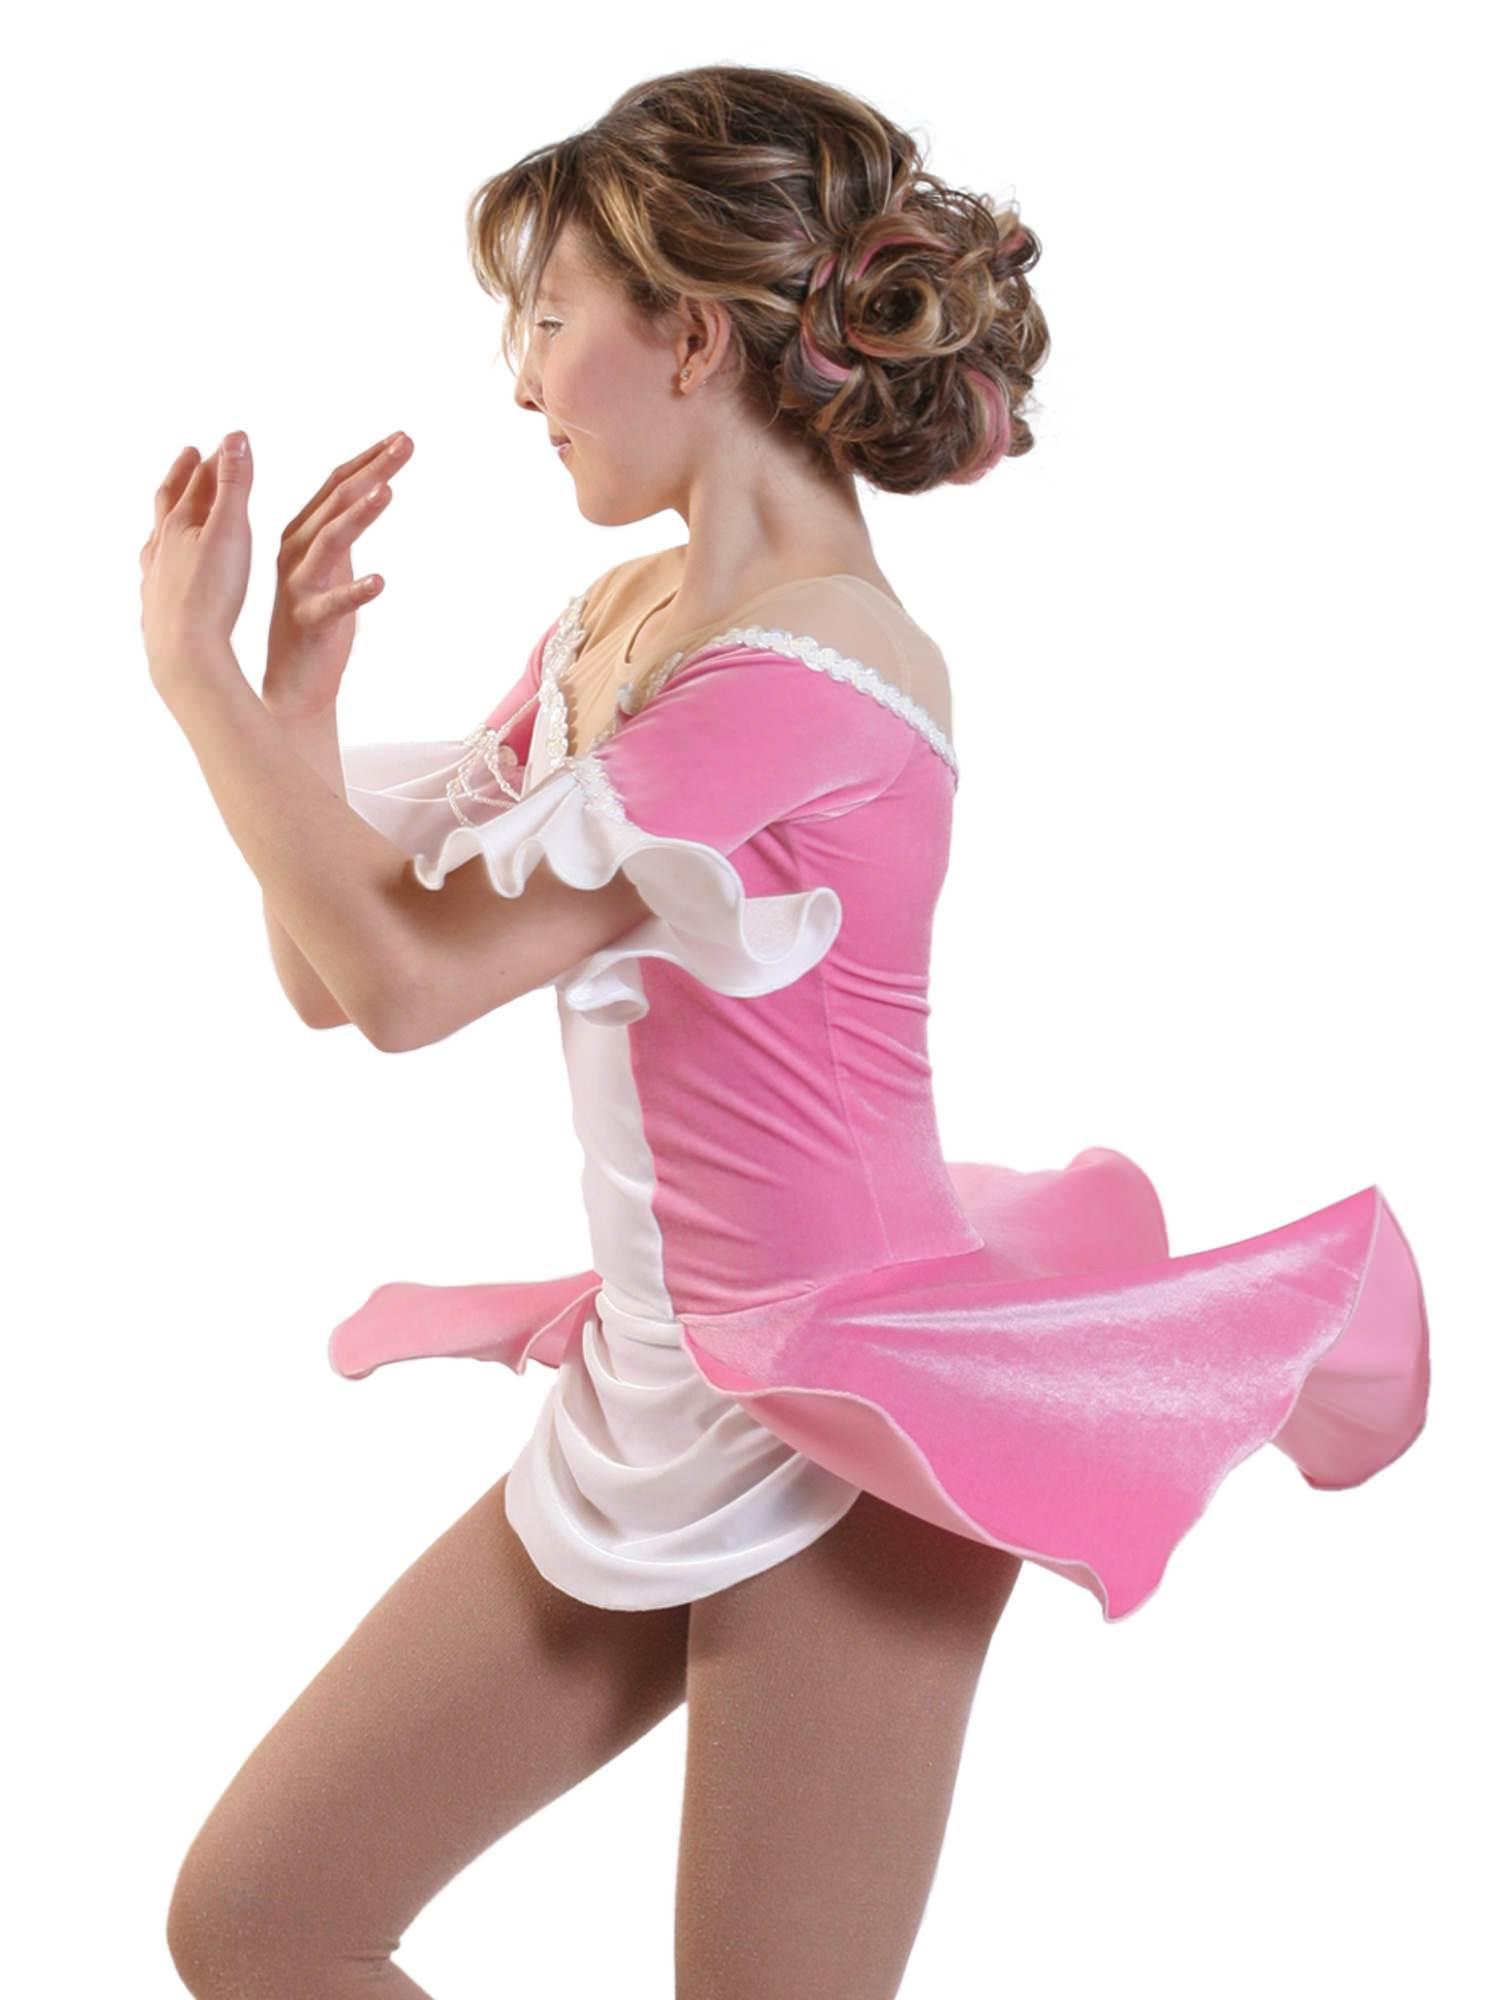 Jalie 2791 - Princess Skating Dress for Girls